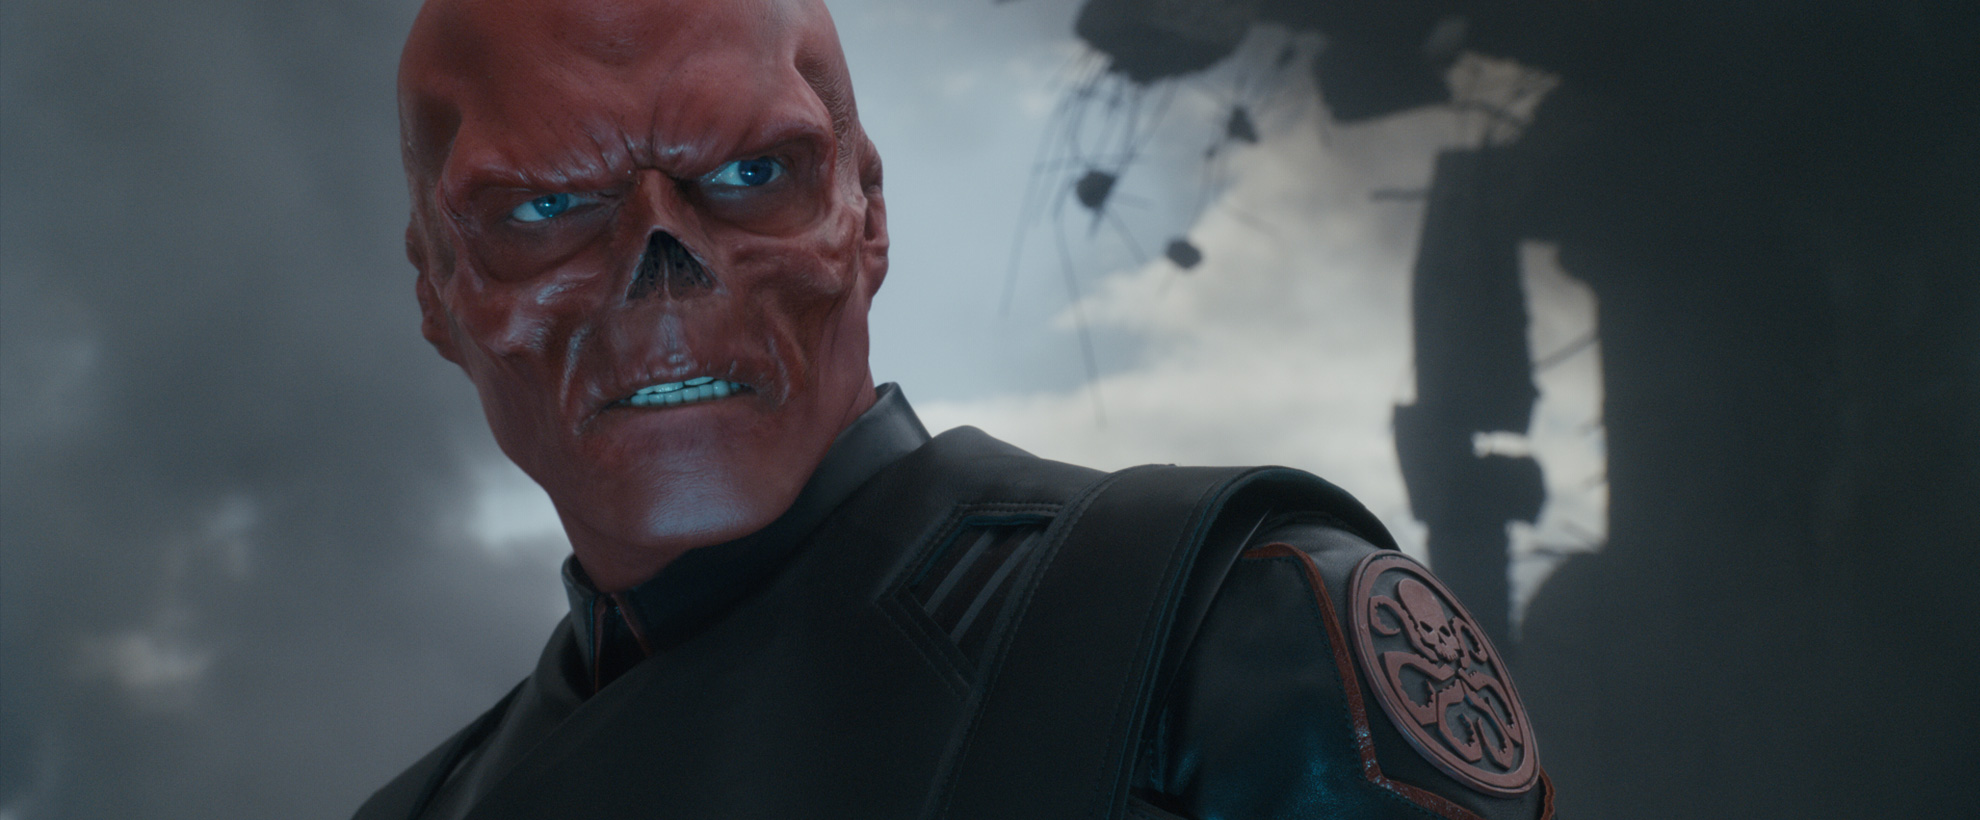 The red skull in Captain America: The First Avenger